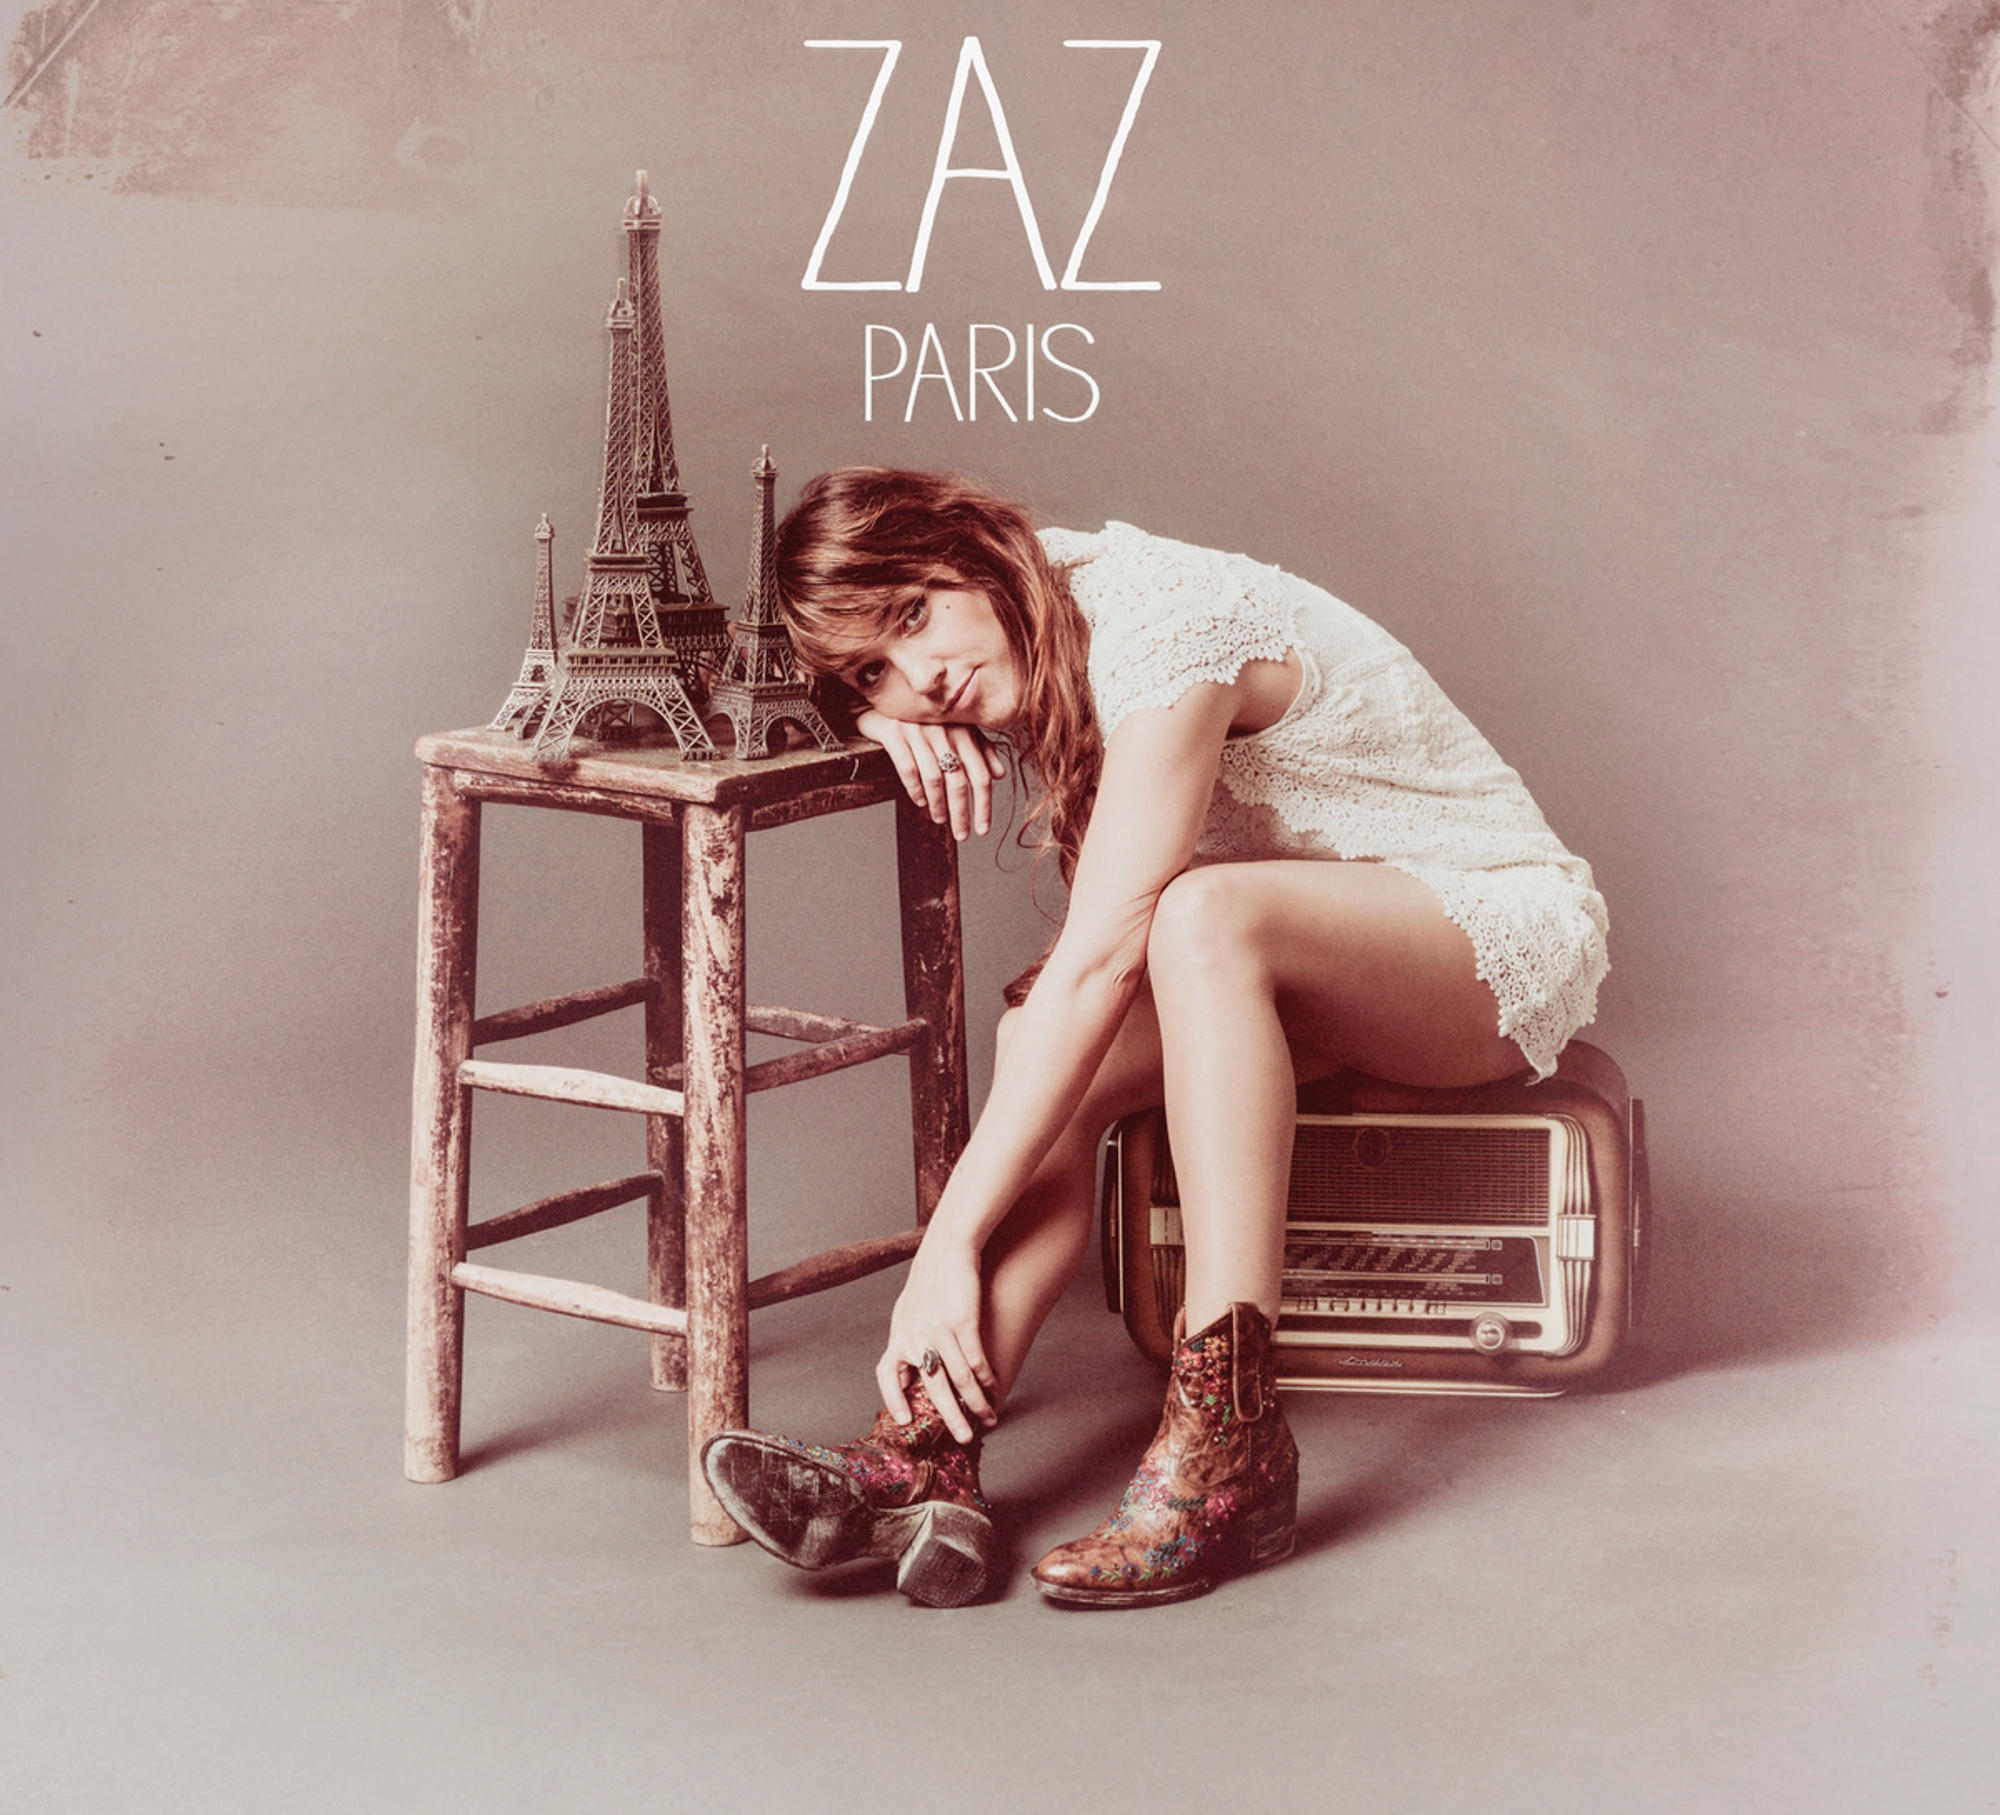 - (CD) - Zaz Paris